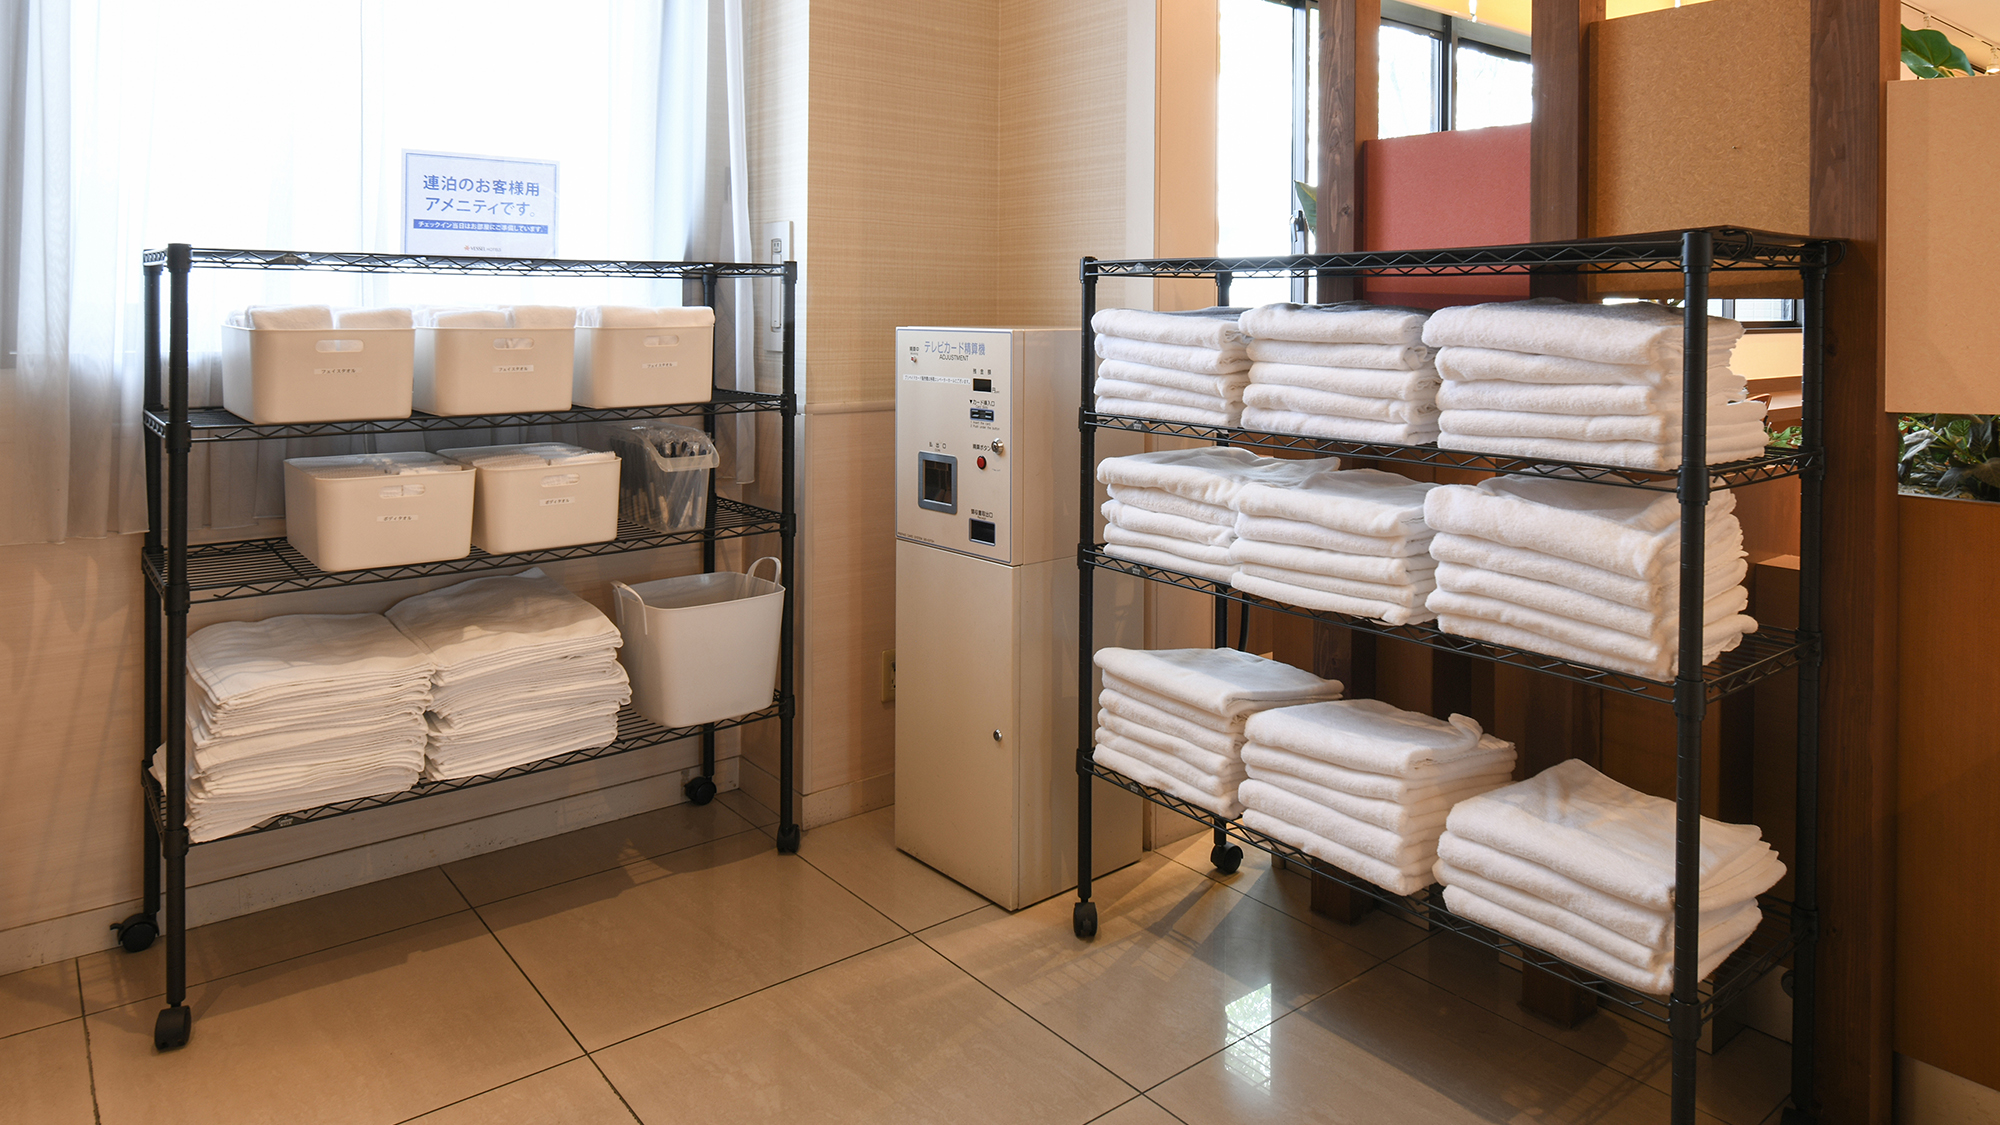 連泊で清掃不要のお客様は1階エレベーター前のタオル置き場よりタオルをご自由にお取りいただけます。